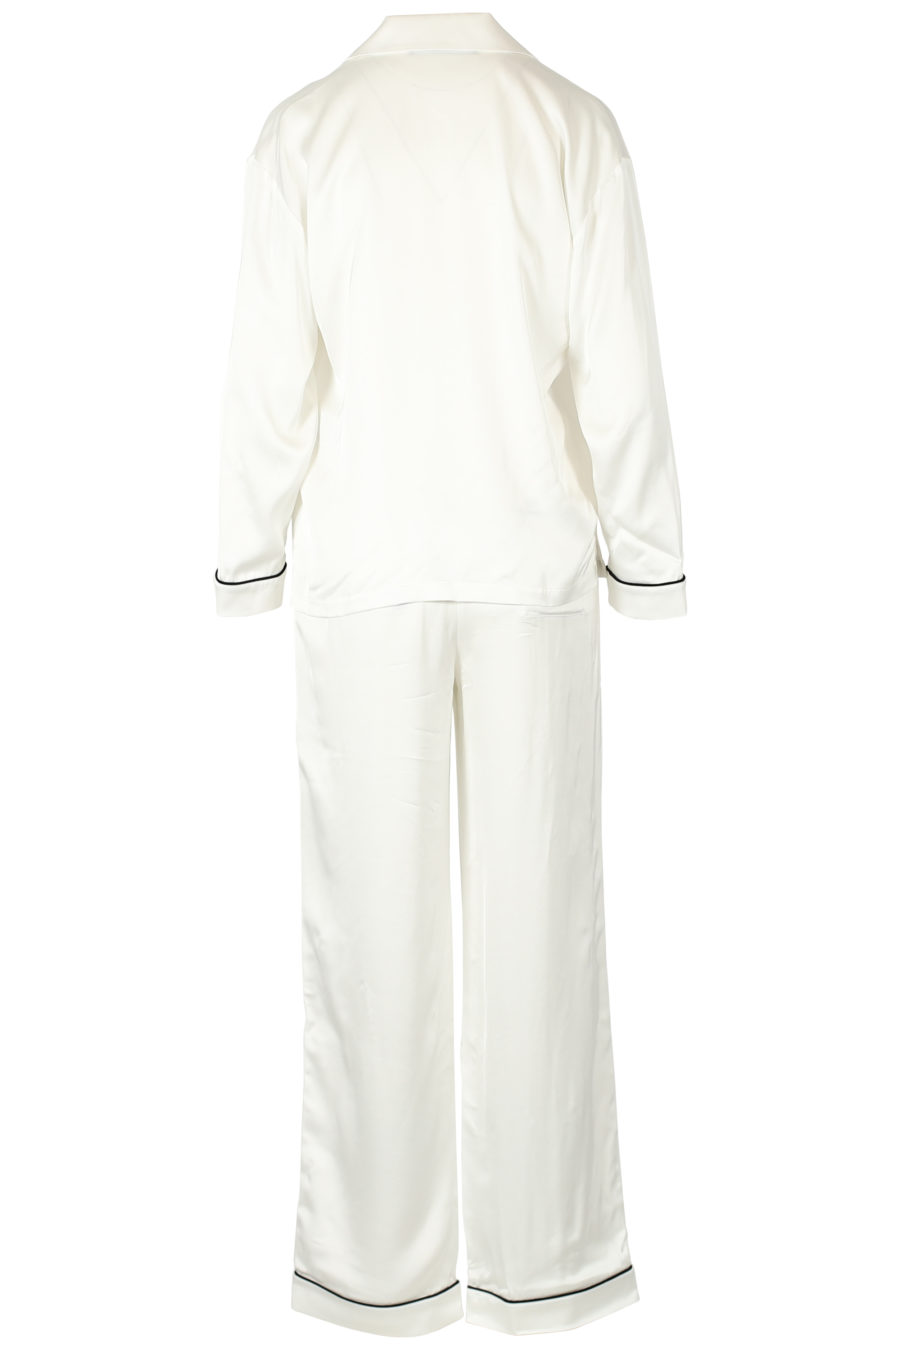 Set de regalo pijama de satén color blanco - IMG 3296